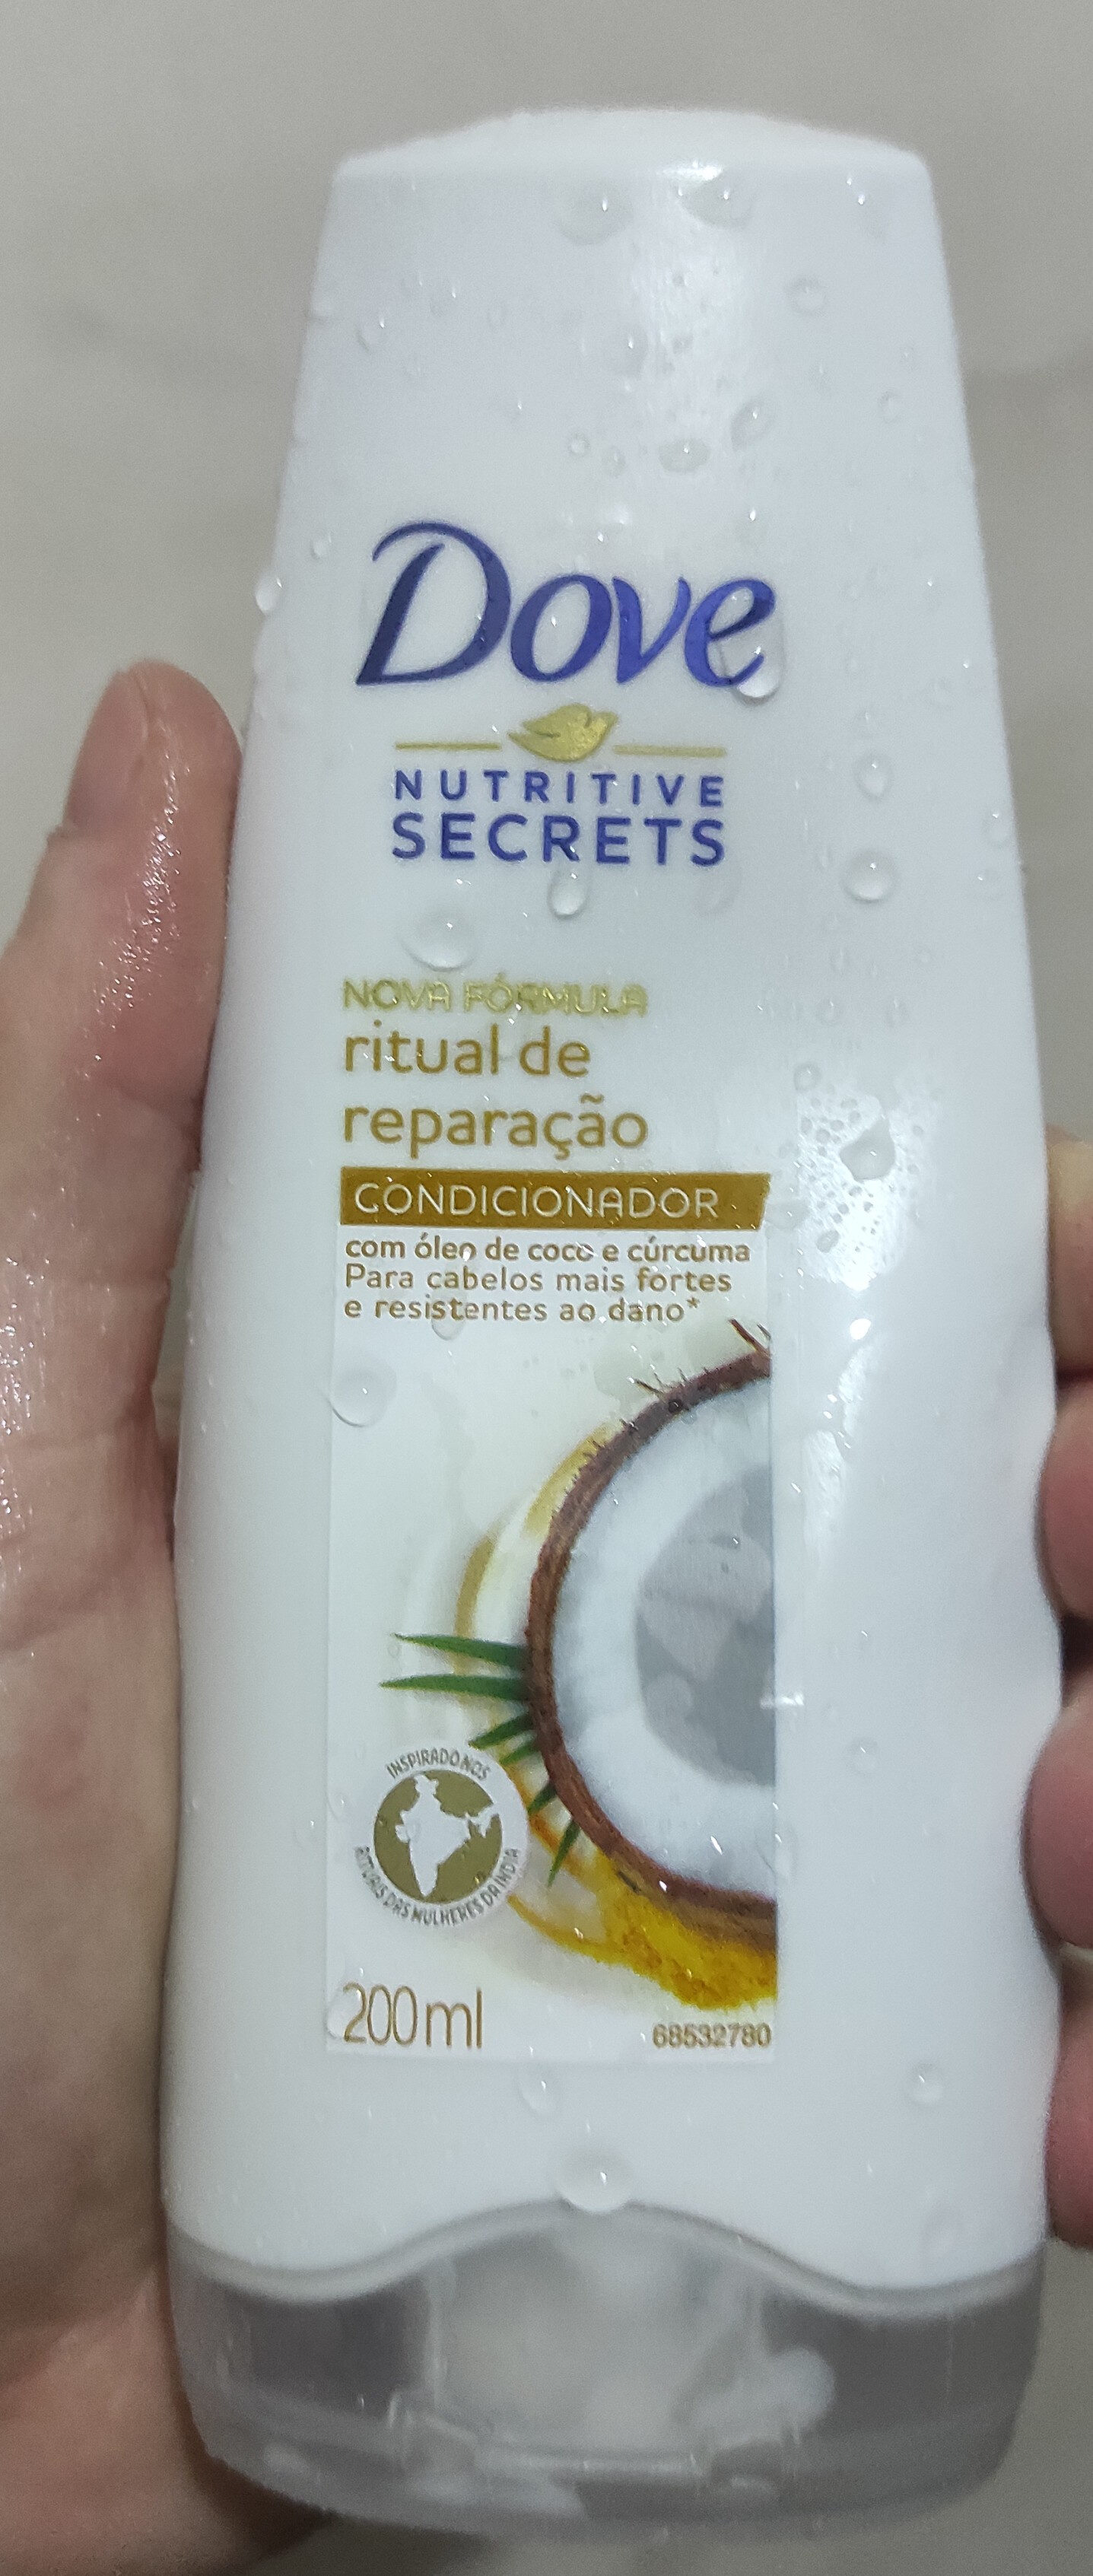 Shampoo Dove Ritual de Reparação - מוצר - pt